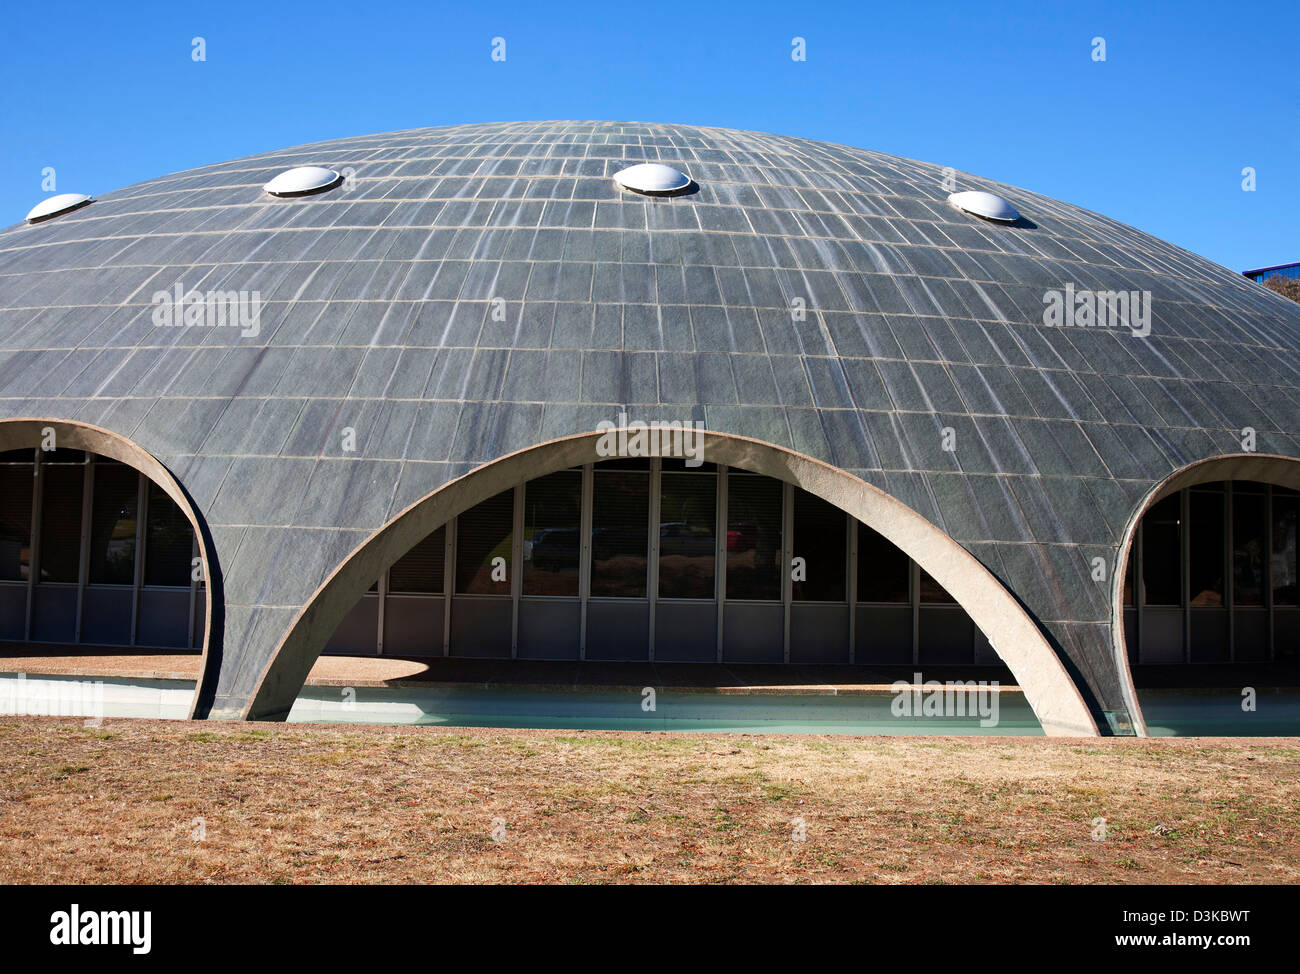 Australian Academy of Science Building - l'Éclat Dome - Canberra Australie Banque D'Images